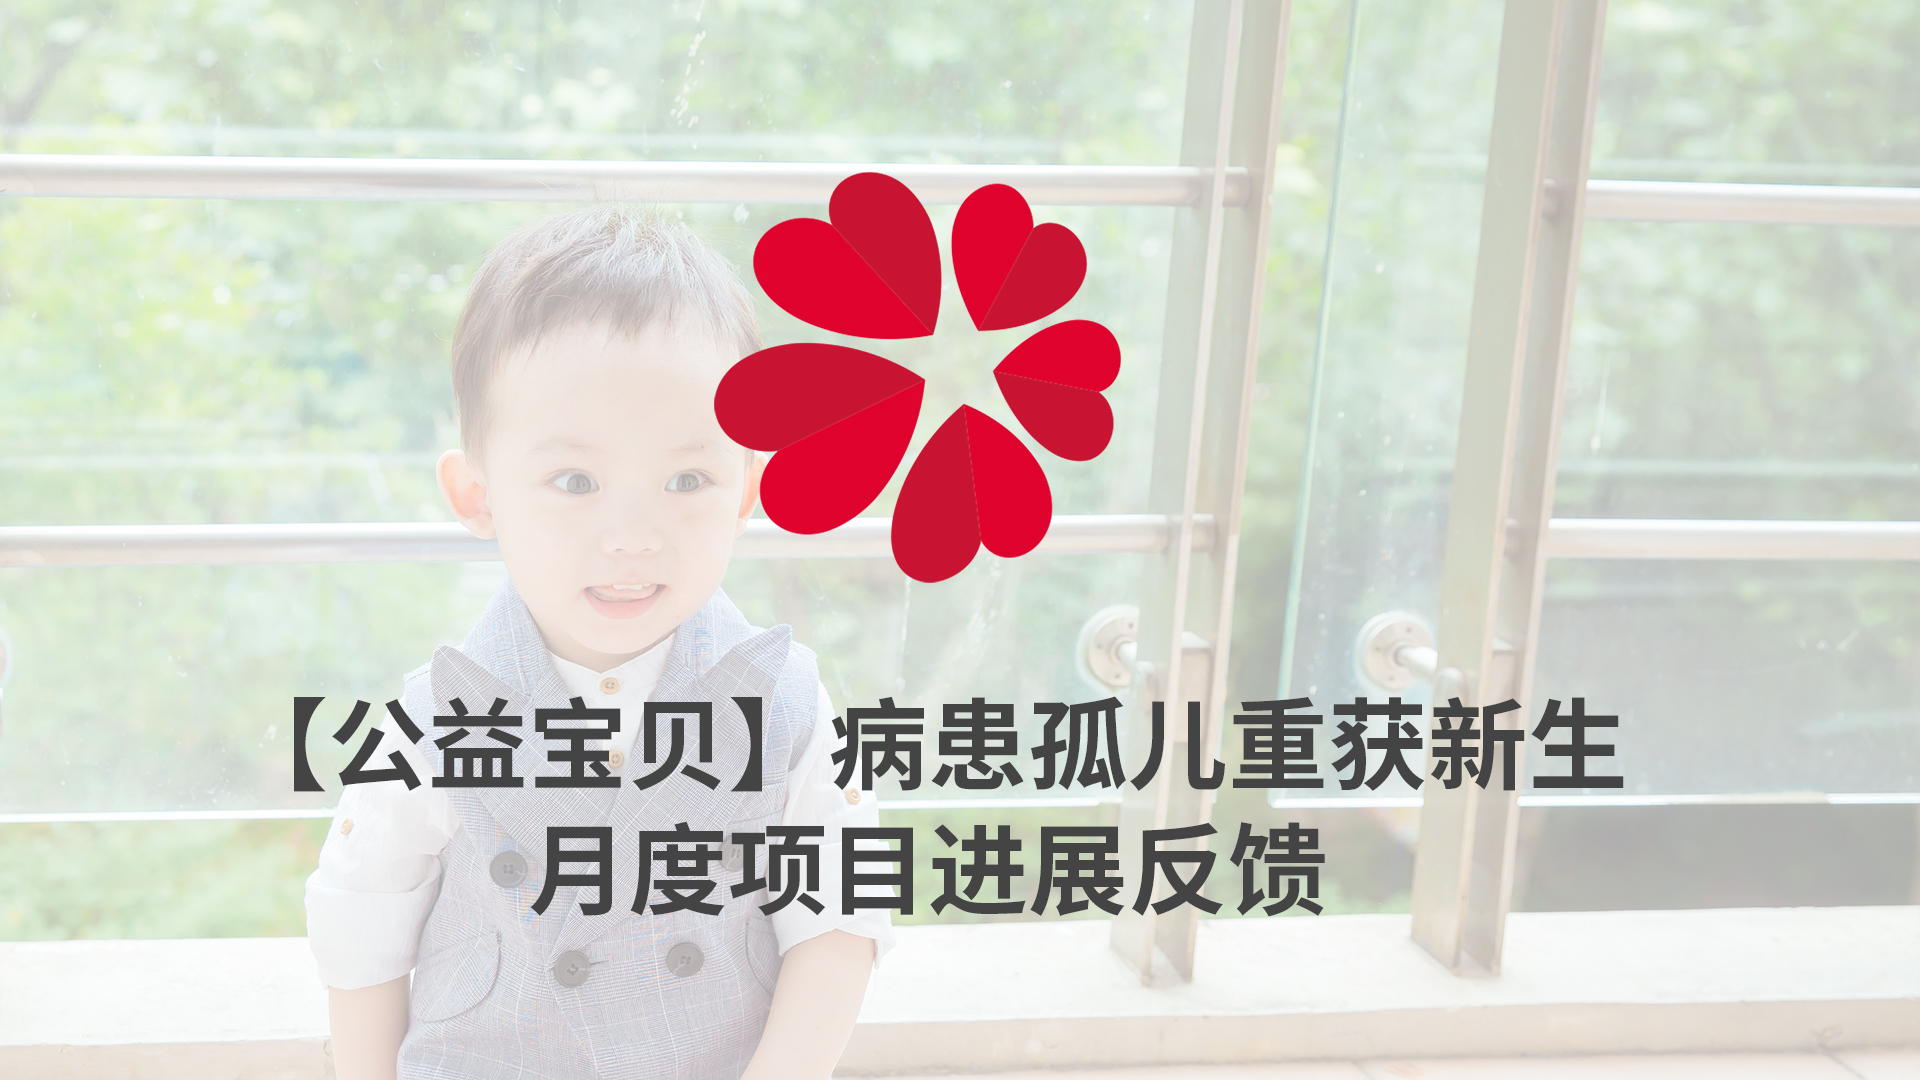 【XIN 益佰项目】病患孤儿重获新生 2023 年 4 月项目进展反馈